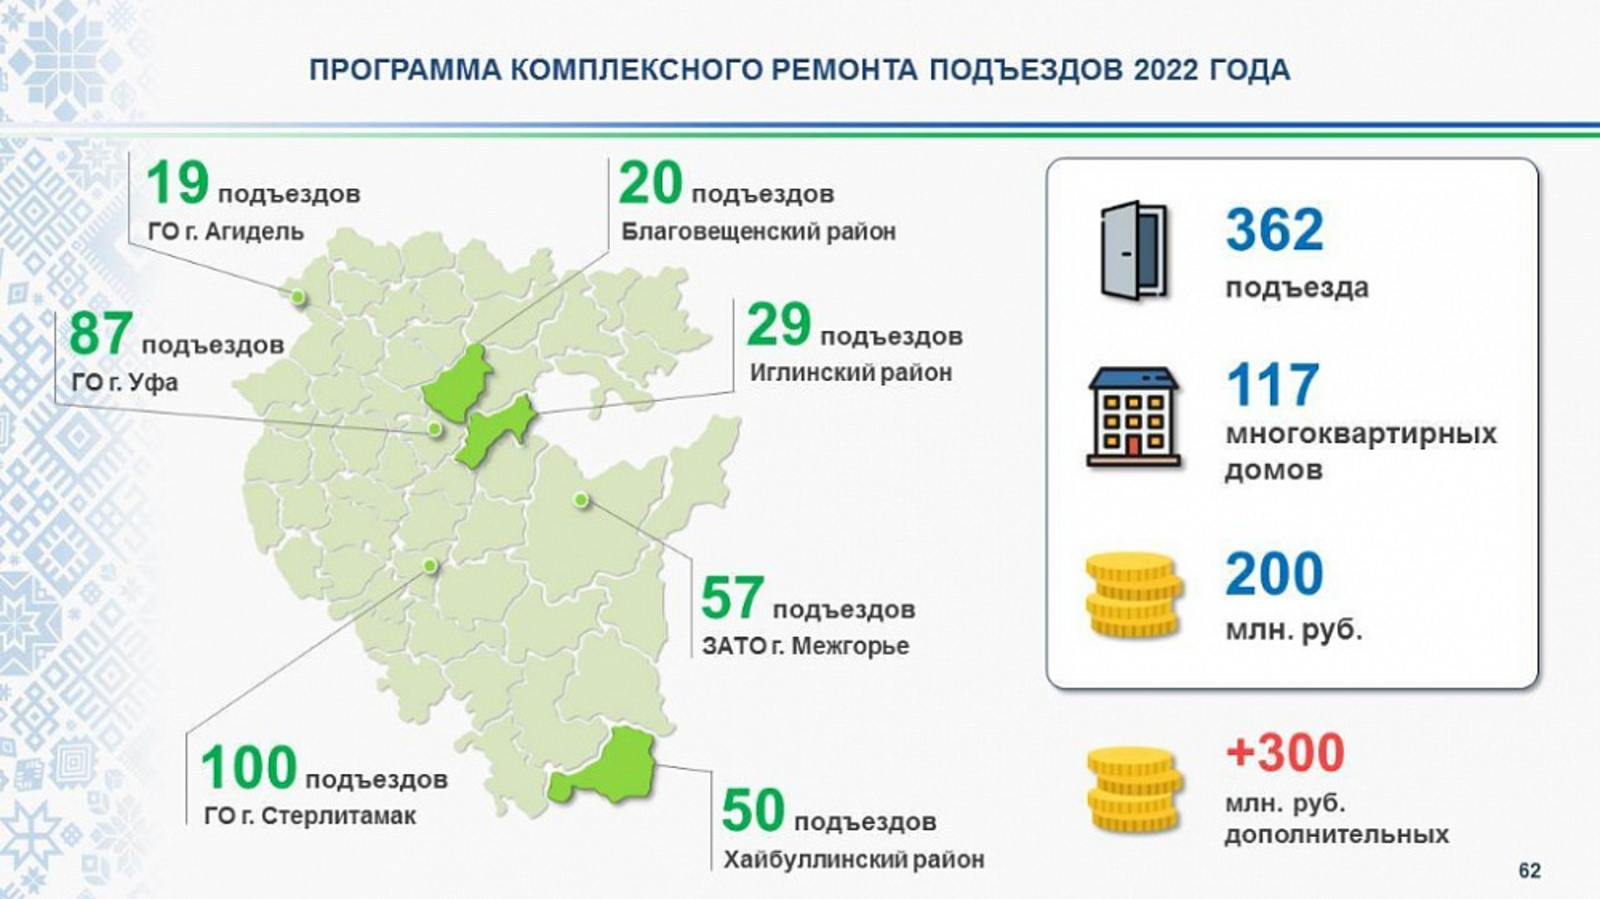 В 2022 году в Башкортостане отремонтируют 362 подъезда и благоустроят 200 дворов